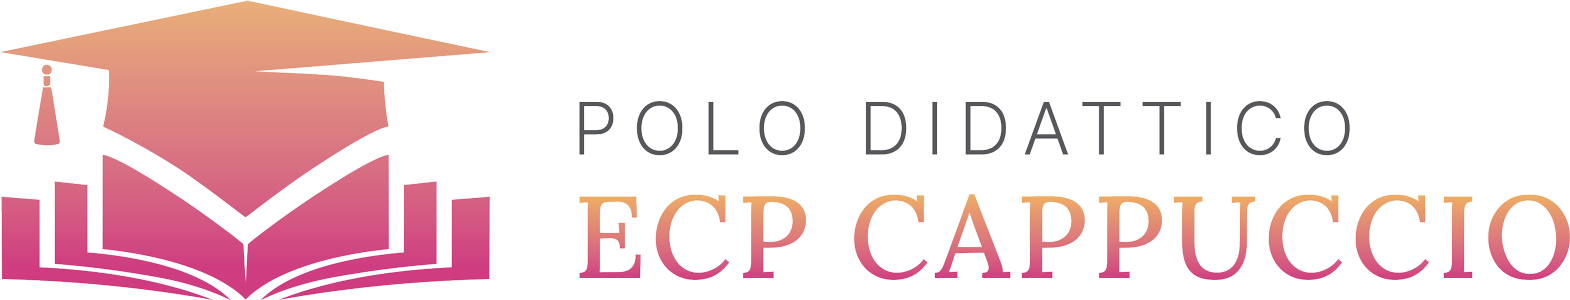 ECP Cappuccio - Polo didattico